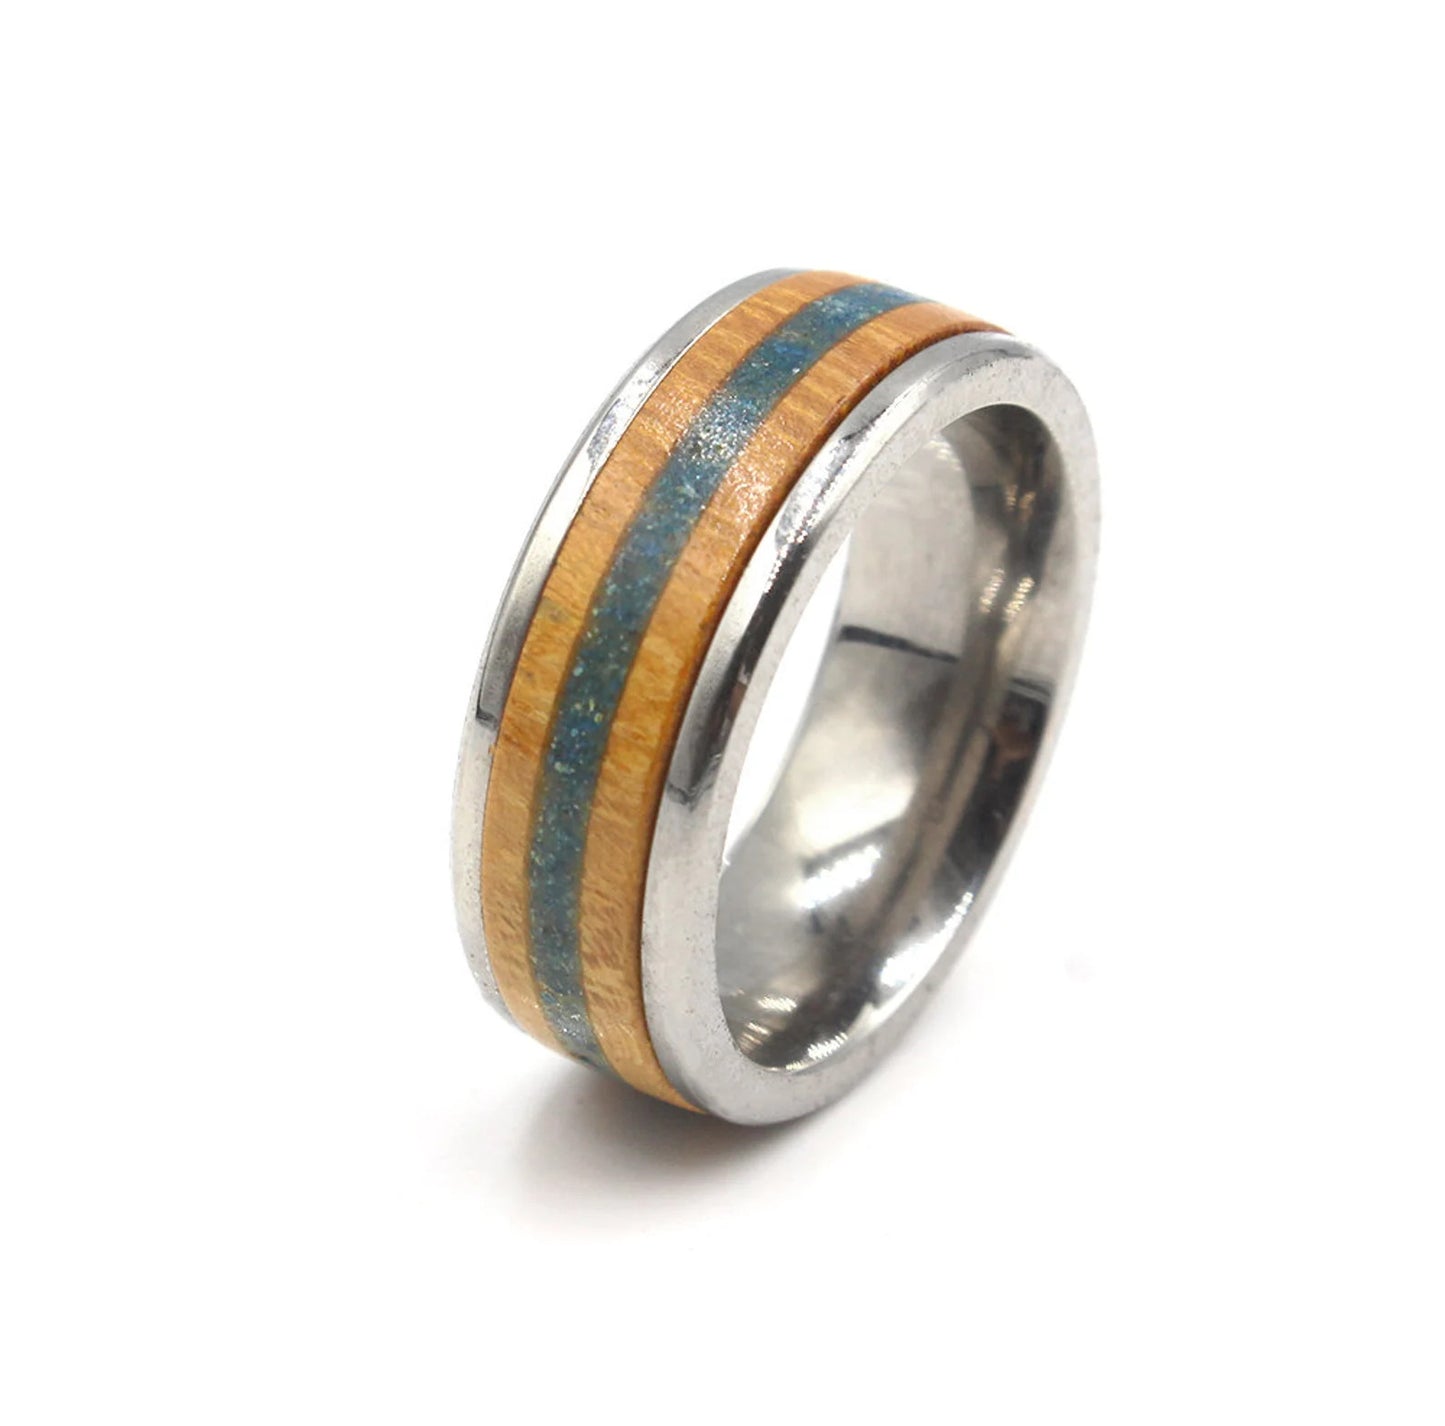 Jackfruit Wood and Lapis Lazuli Inlay Ring